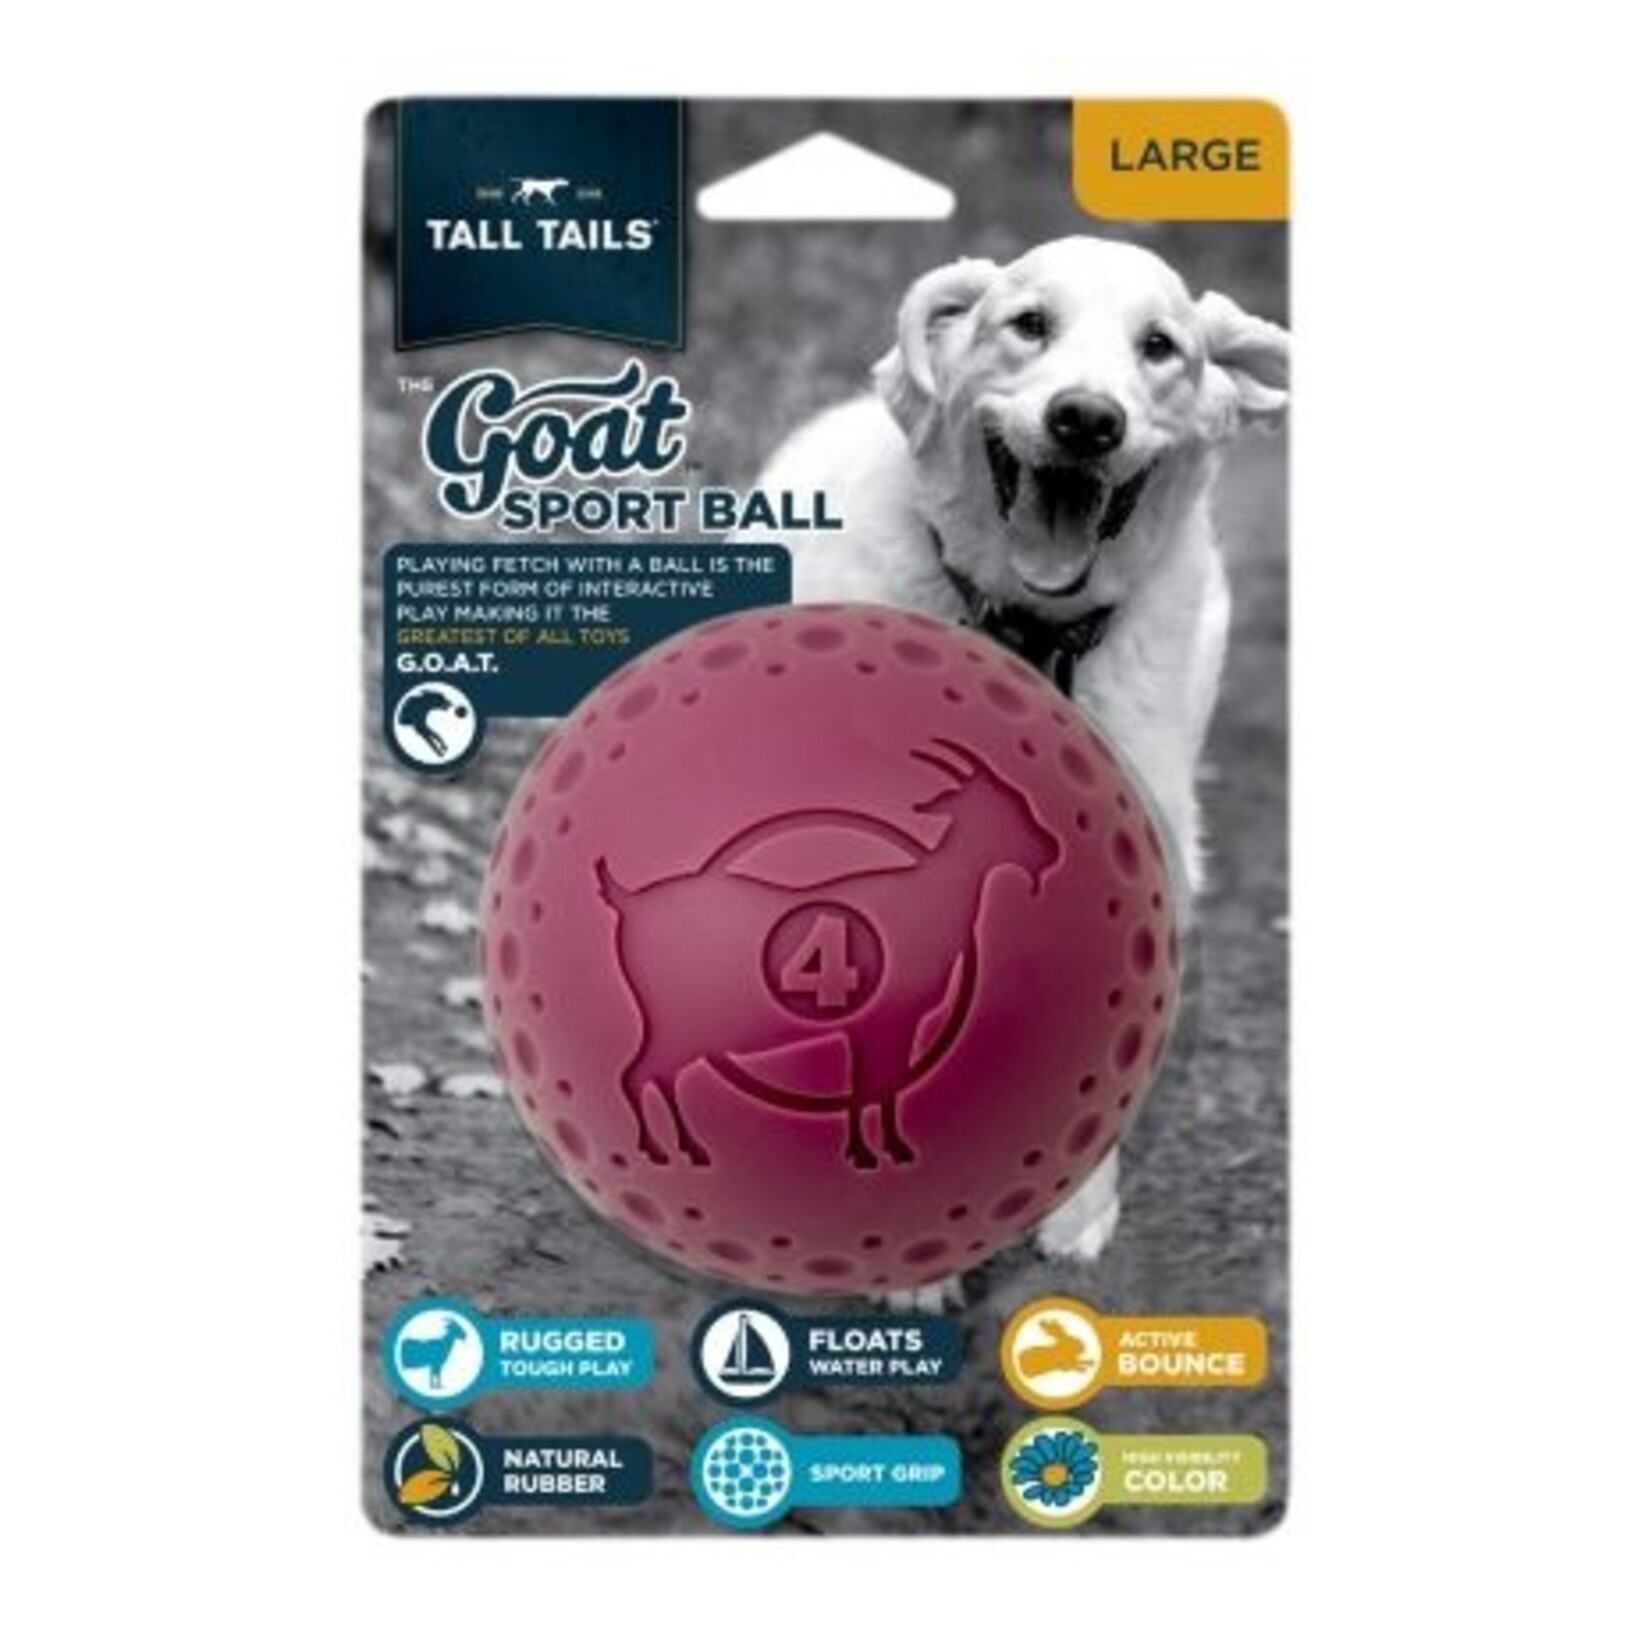 Tall Tails 4” - Purple - Goat Sport Ball - Tall Tails